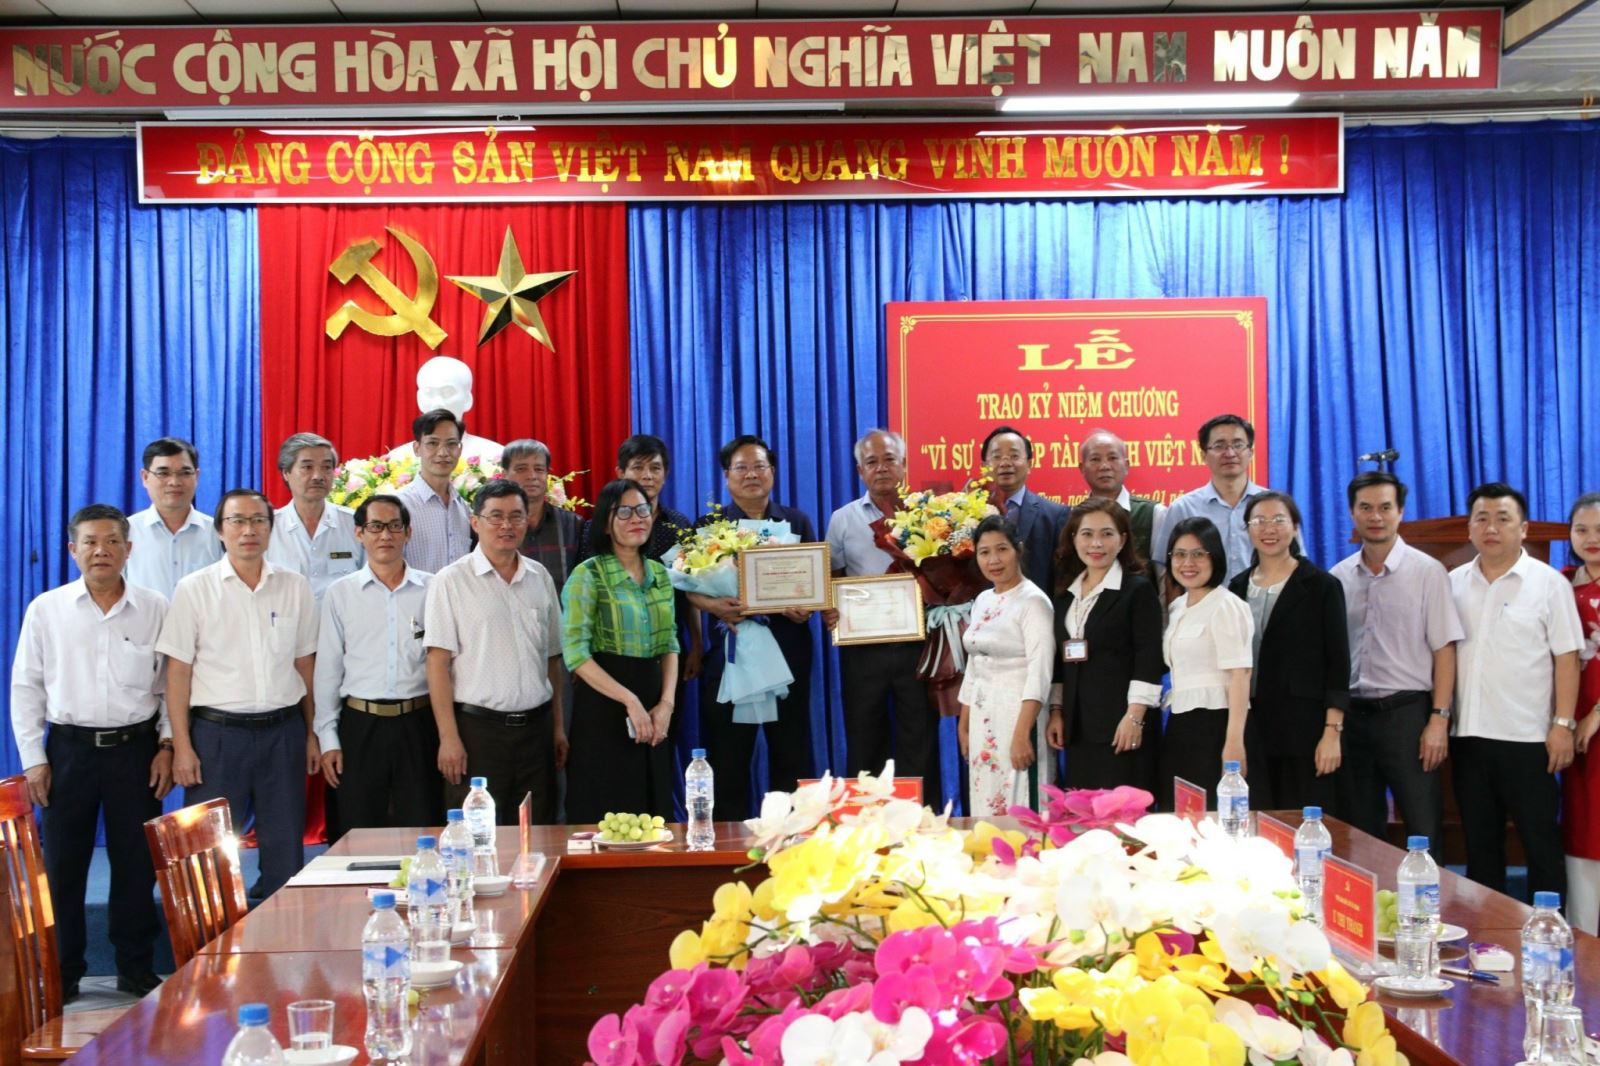 Sở Tài chính tổ chức Lễ trao Kỷ niệm chương “Vì sự nghiệp Tài chính Việt Nam”